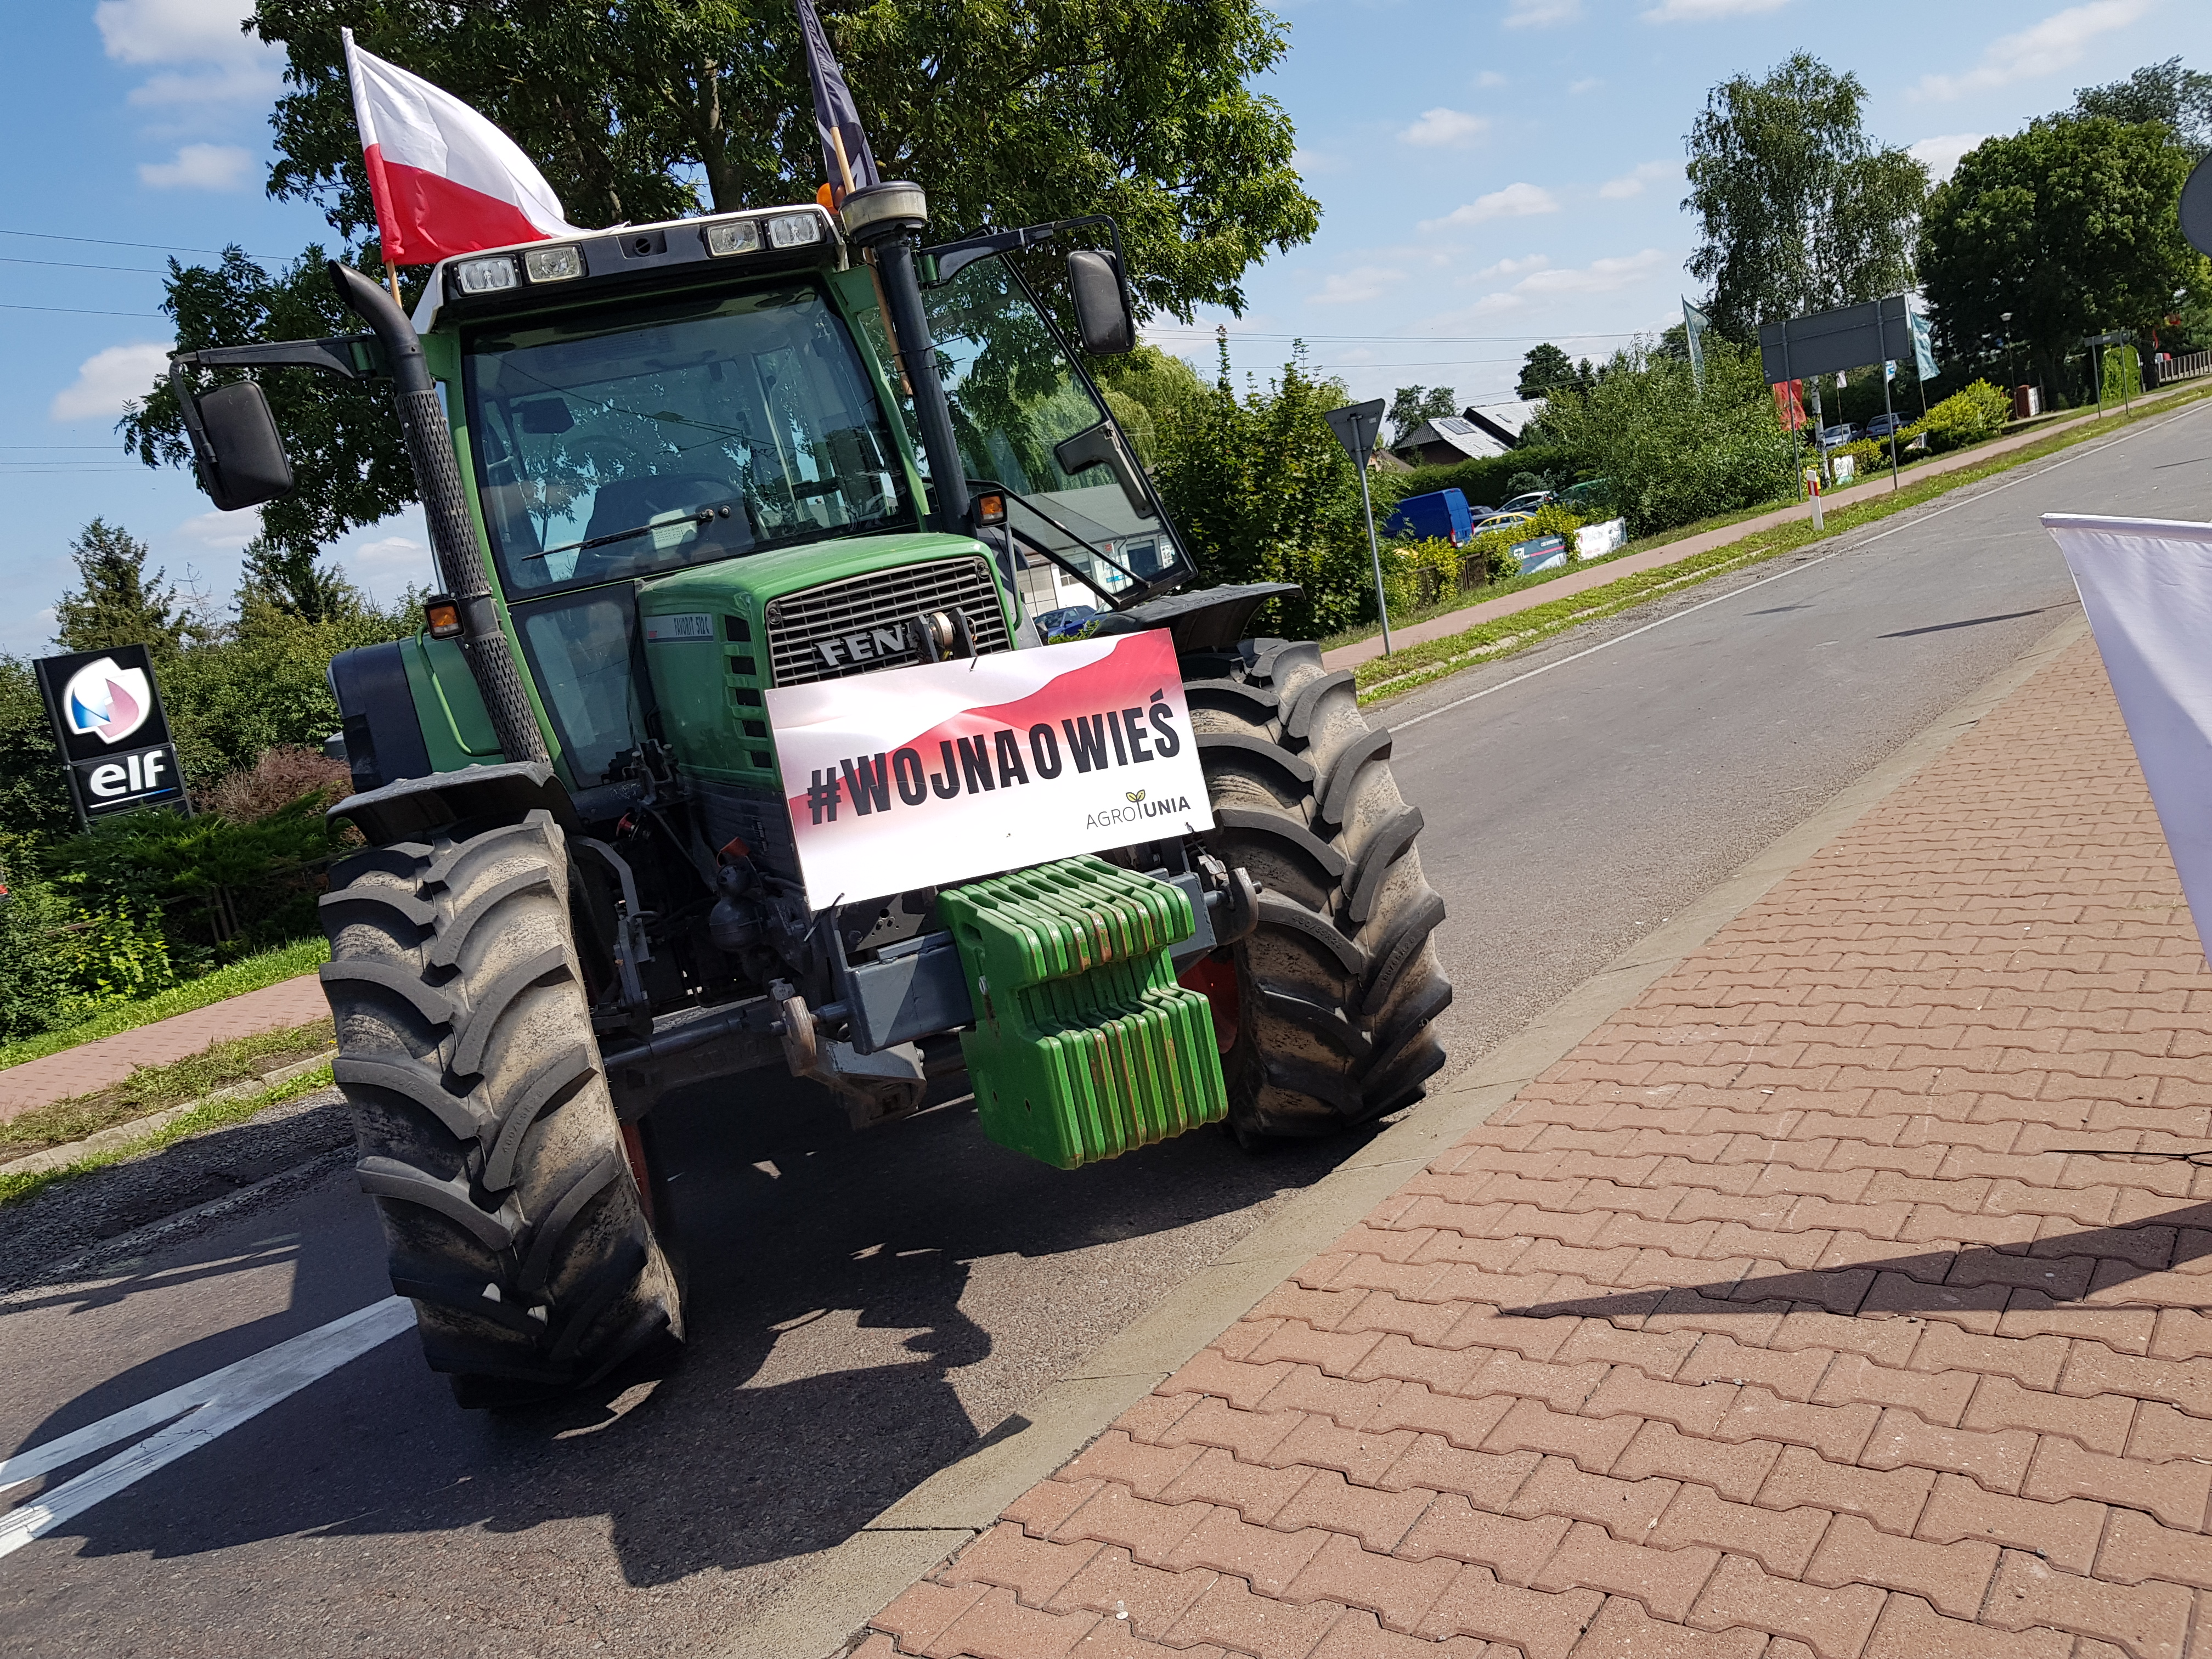 W regionie nadal trwa protest rolników. Występują utrudnienia w ruchu na drogach krajowych (zdjęcia)